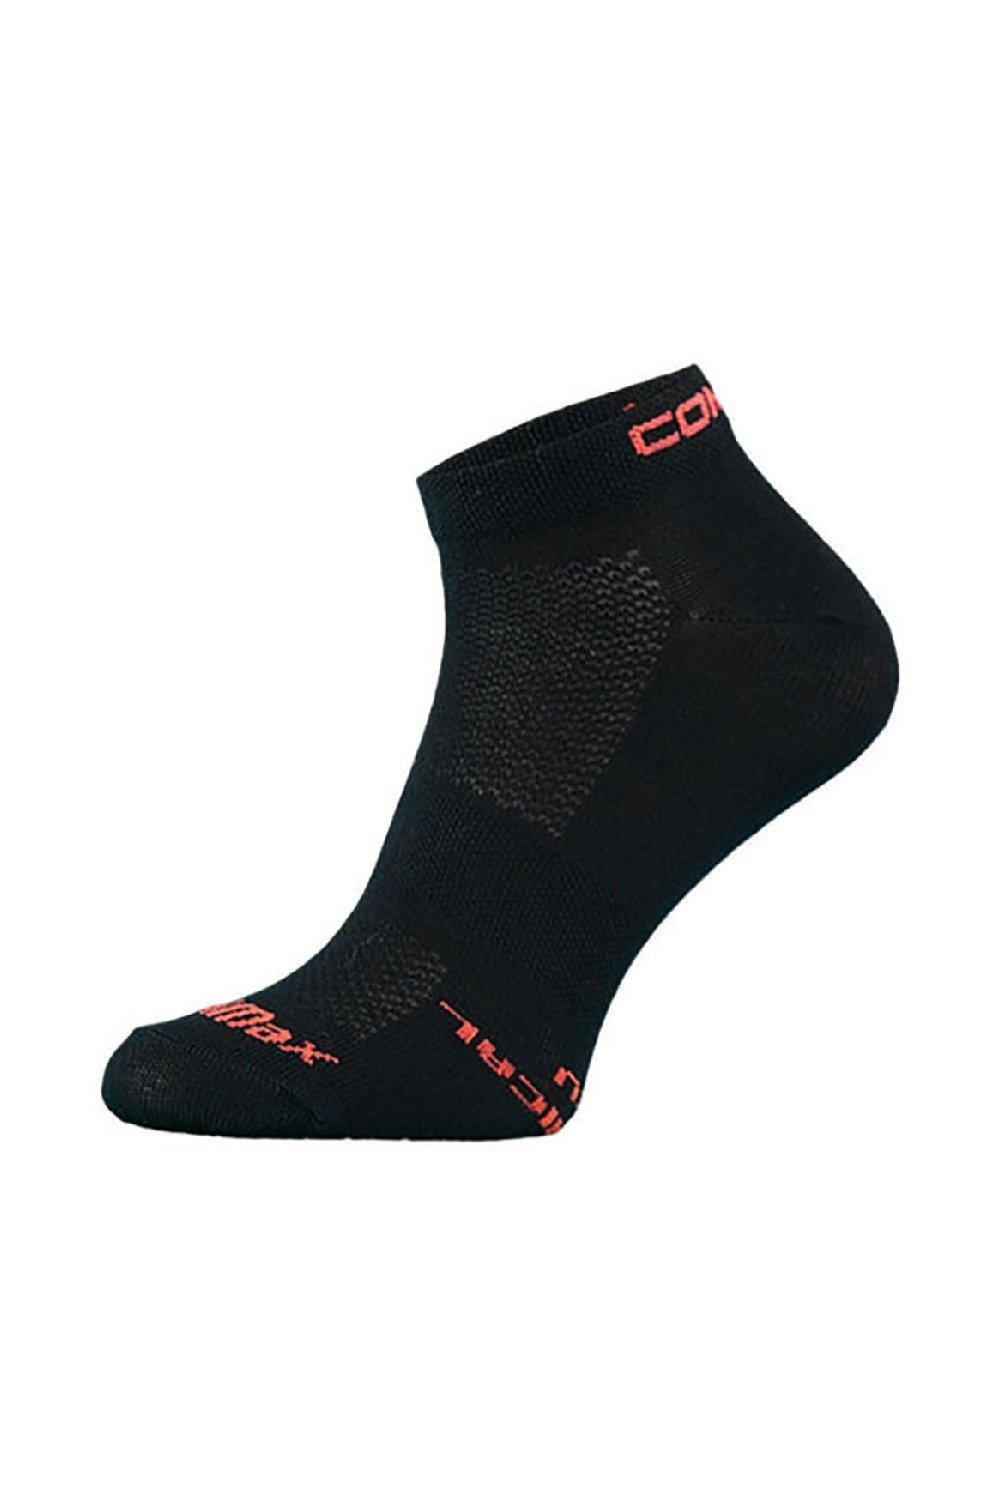 Ultra Coolmax Ankle Length Running Jogging Socks